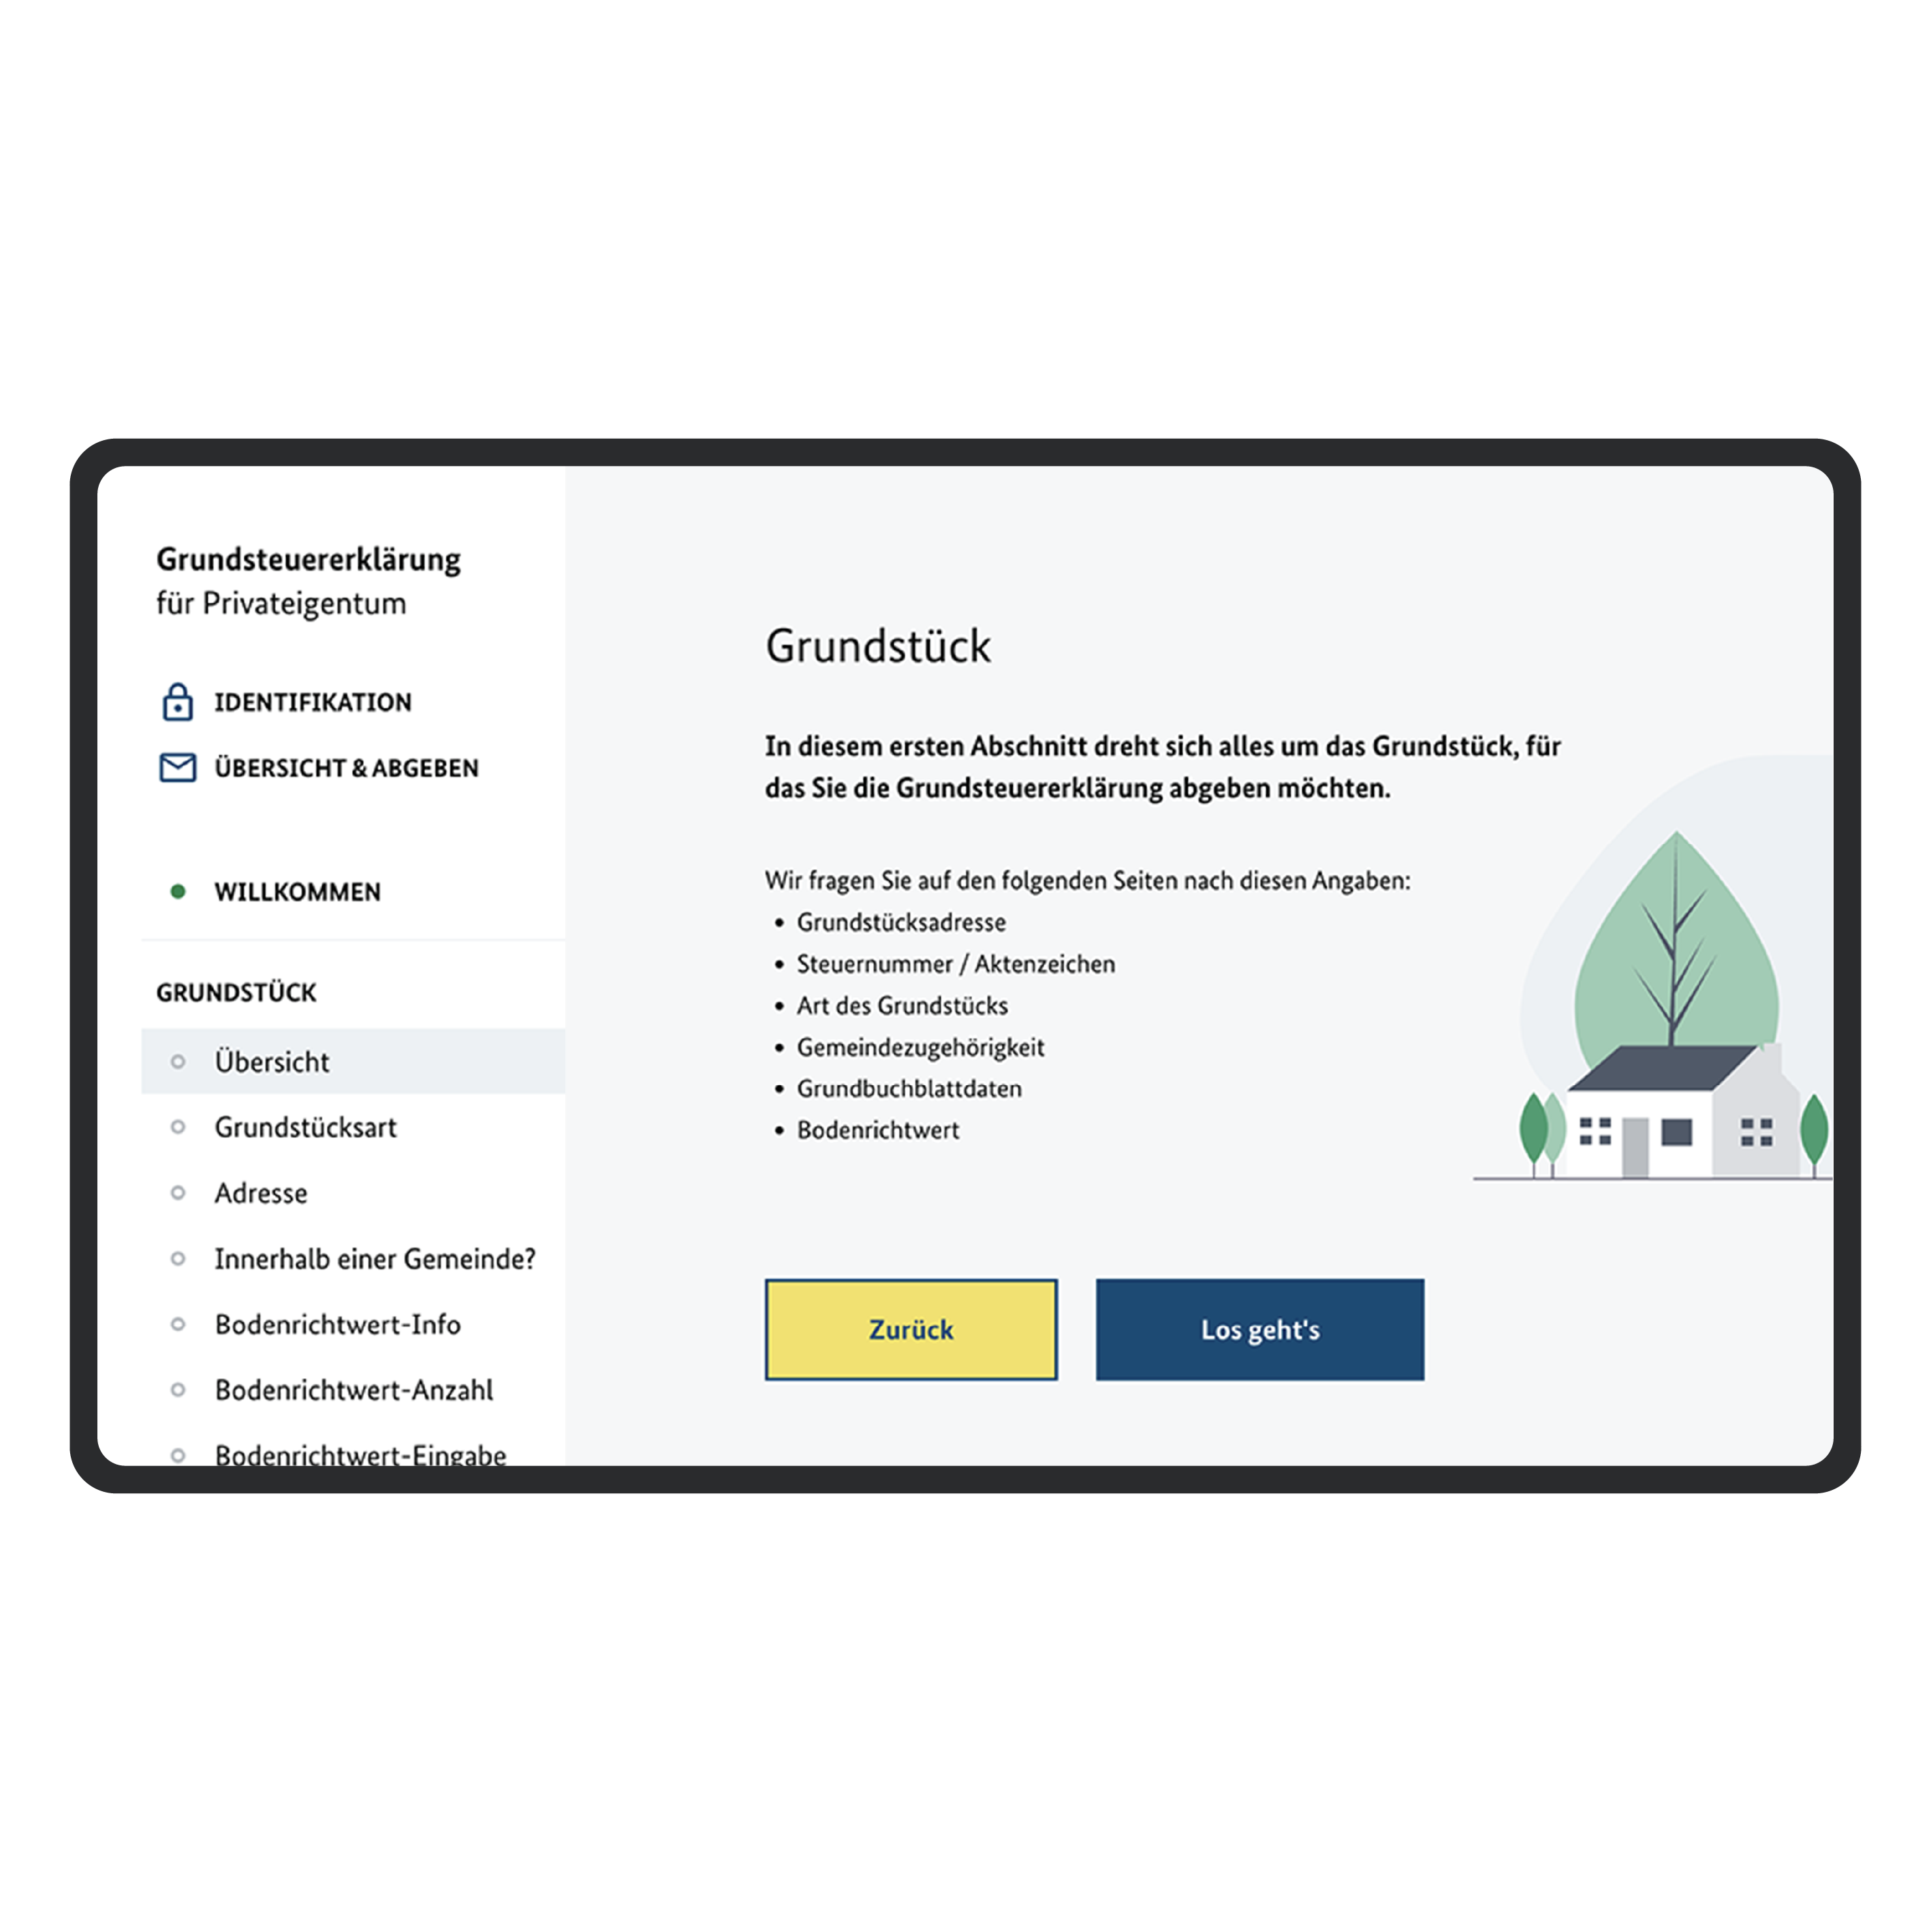 Desktop view of the start page of the online service “Grundsteuererklärung für Privateigentum“